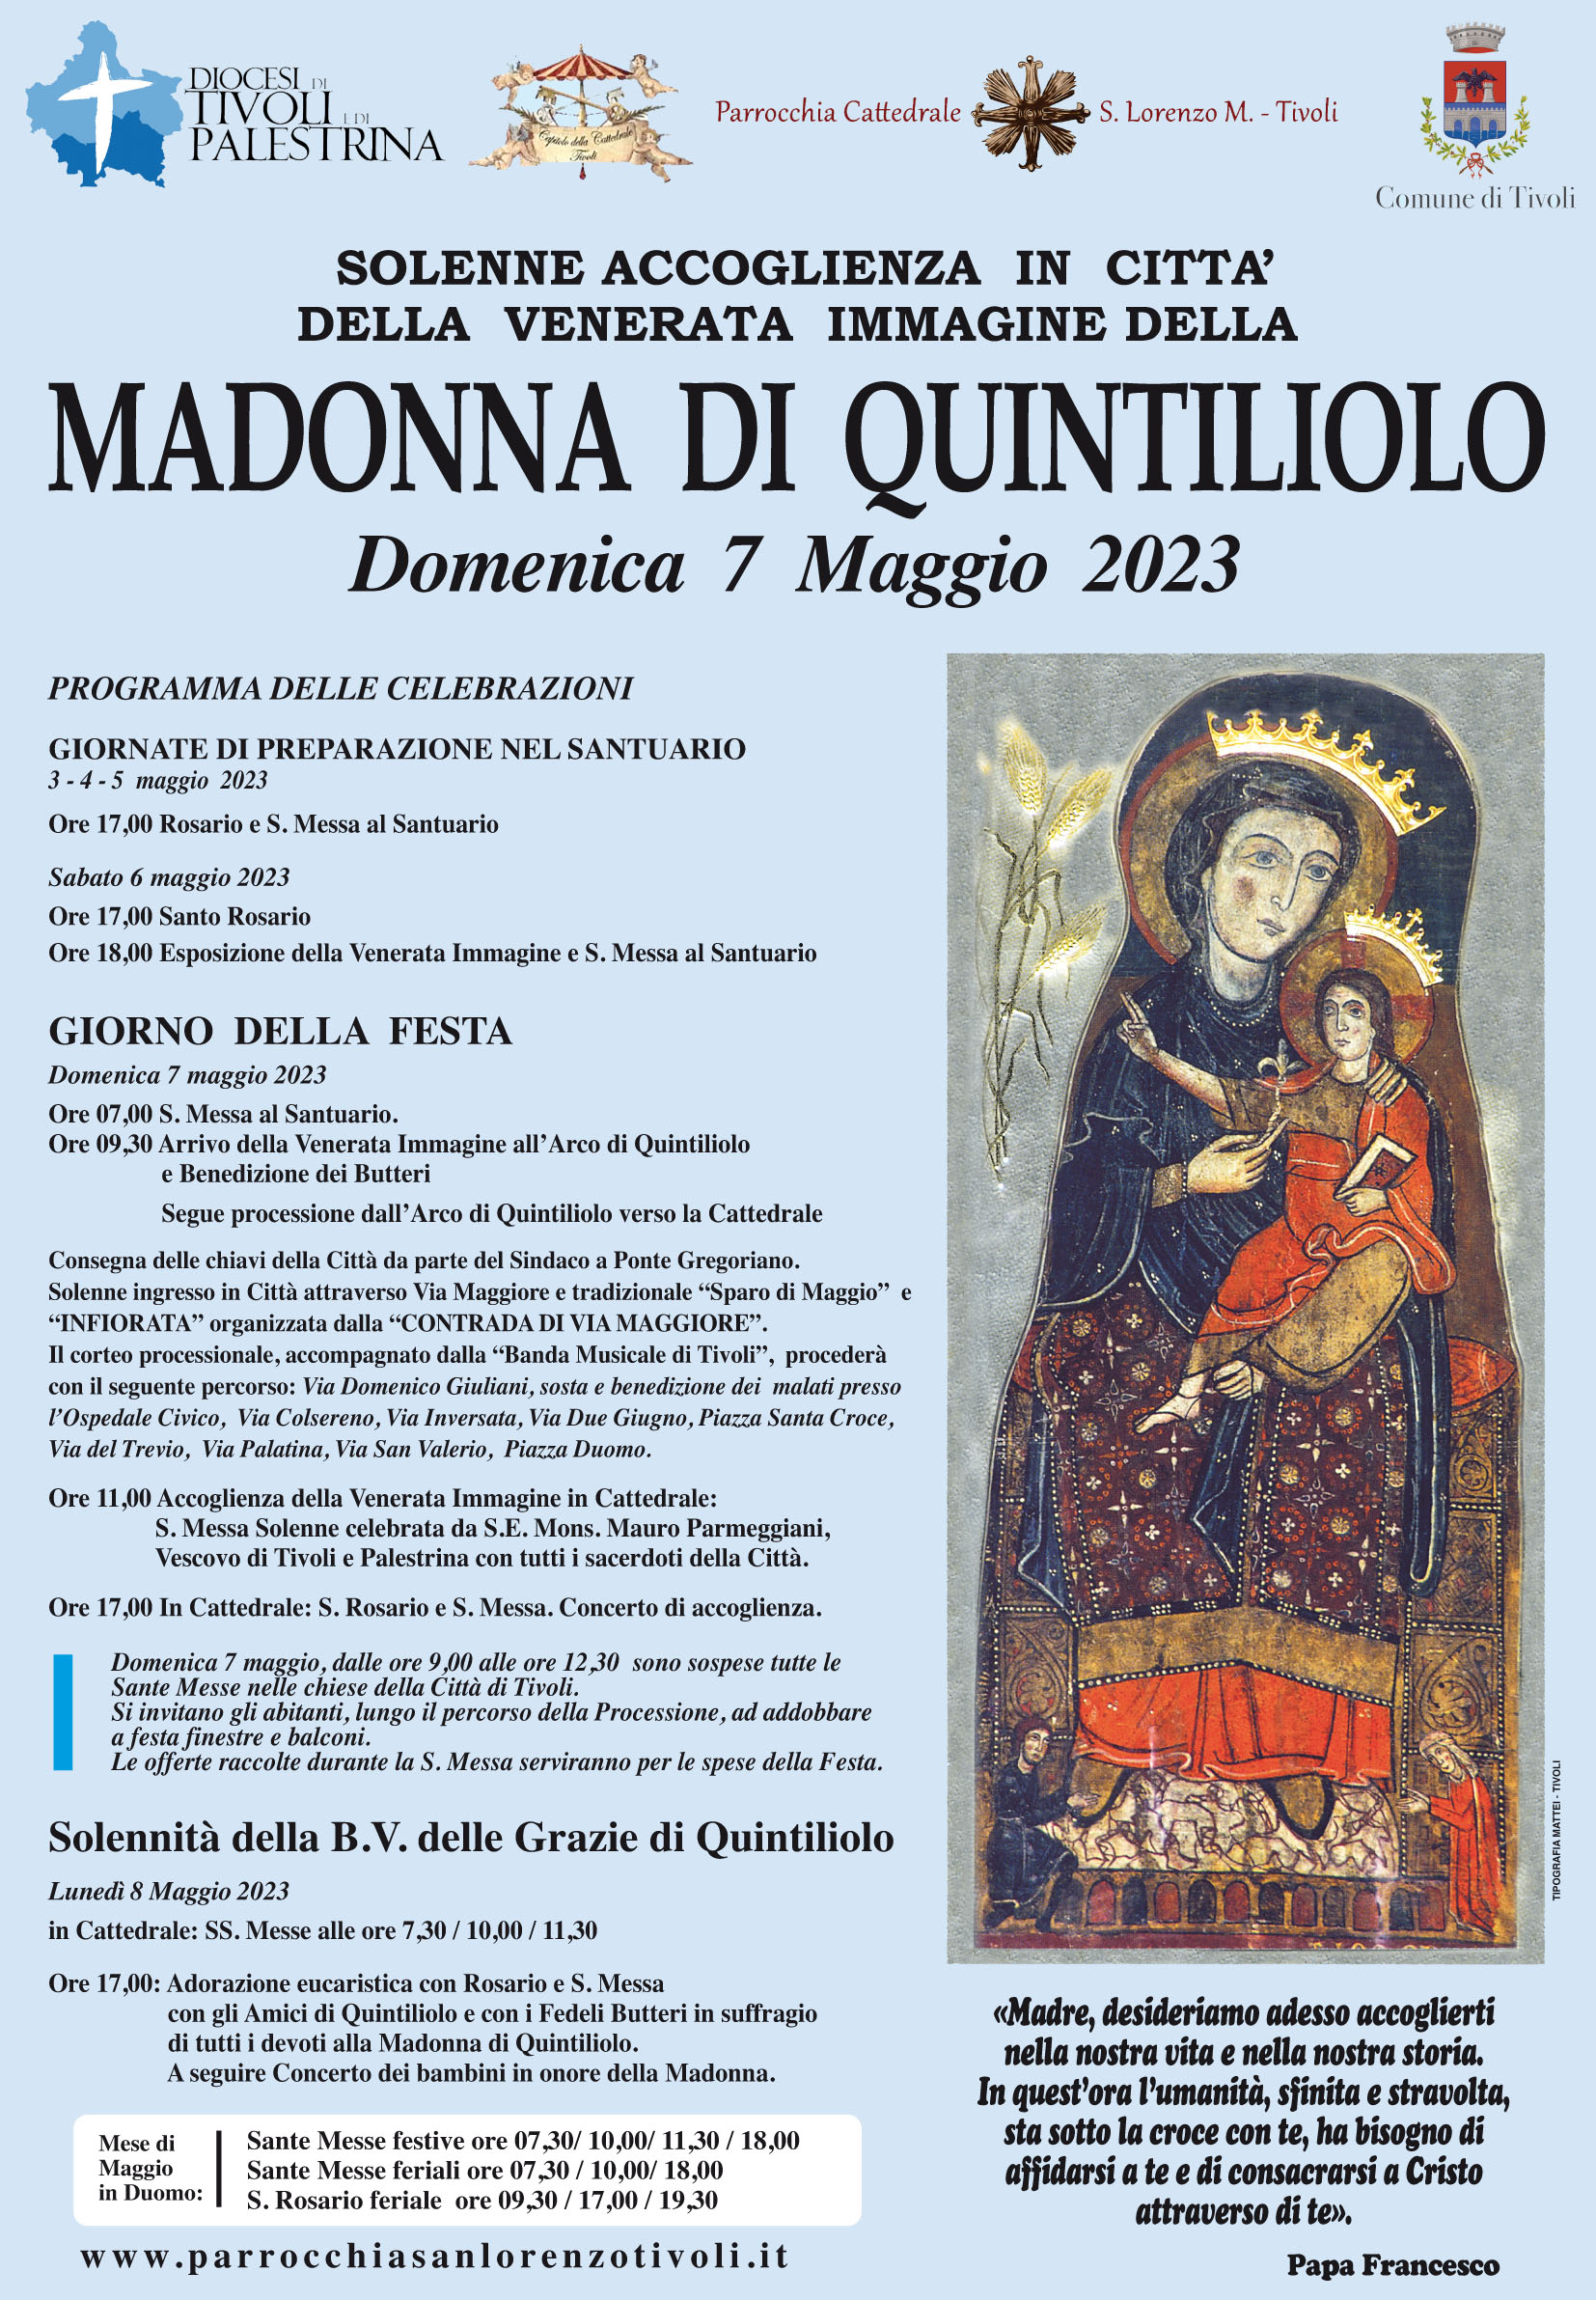 Festa della Madonna di Quintiliolo. Domenica 7 maggio 2023 processione e solenne accoglienza in Cattedrale. Programma